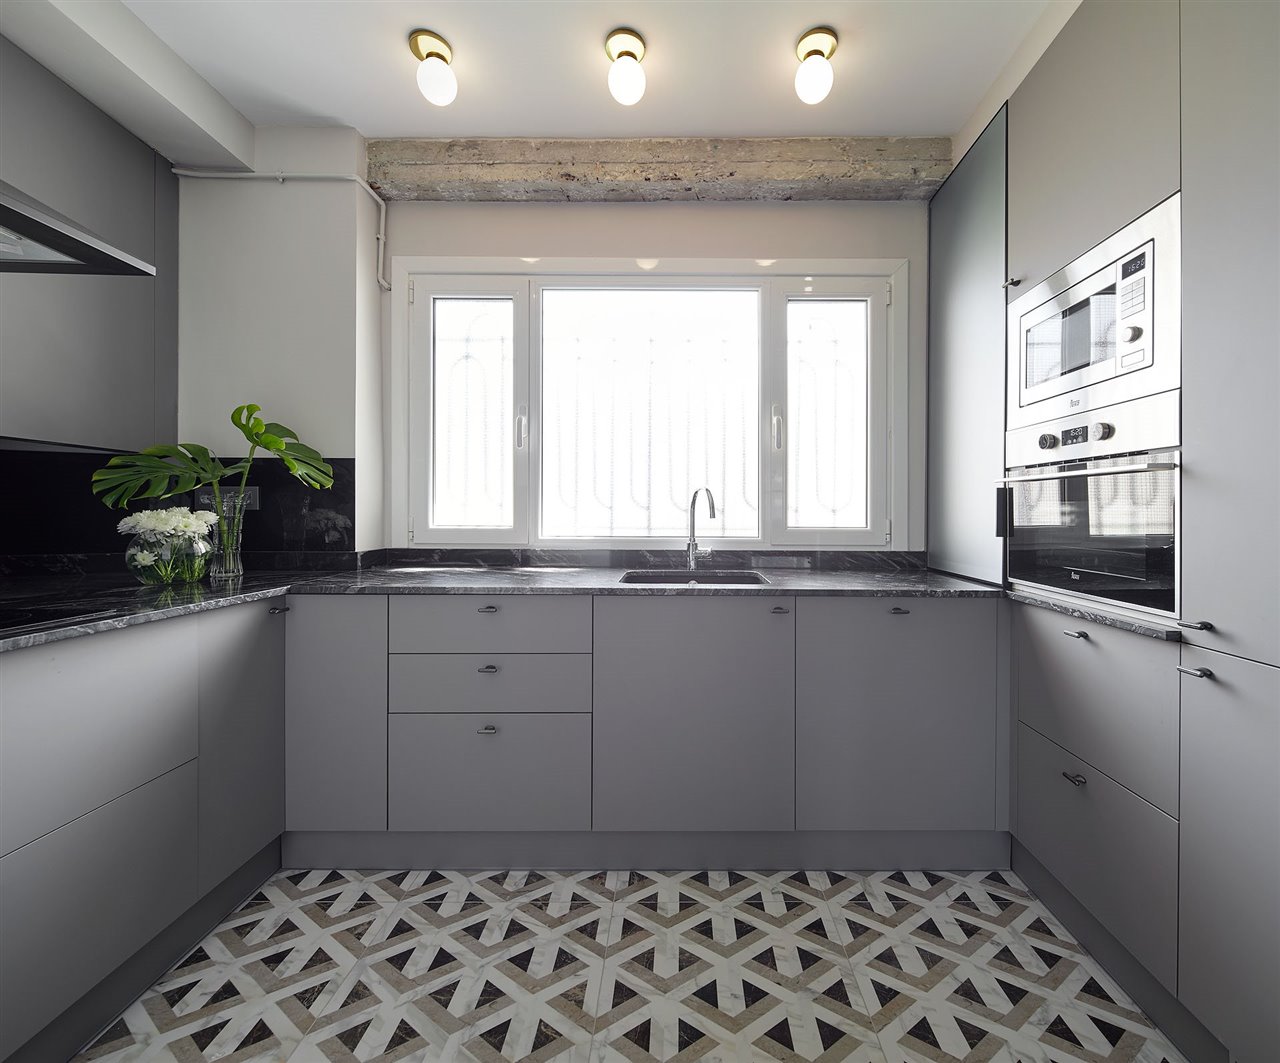 La elegancia del gris se ha apoderado de todos los elementos de esta cocina. (Elisabet Brion Interiorista | Foto: Iñaki Caperochipi)